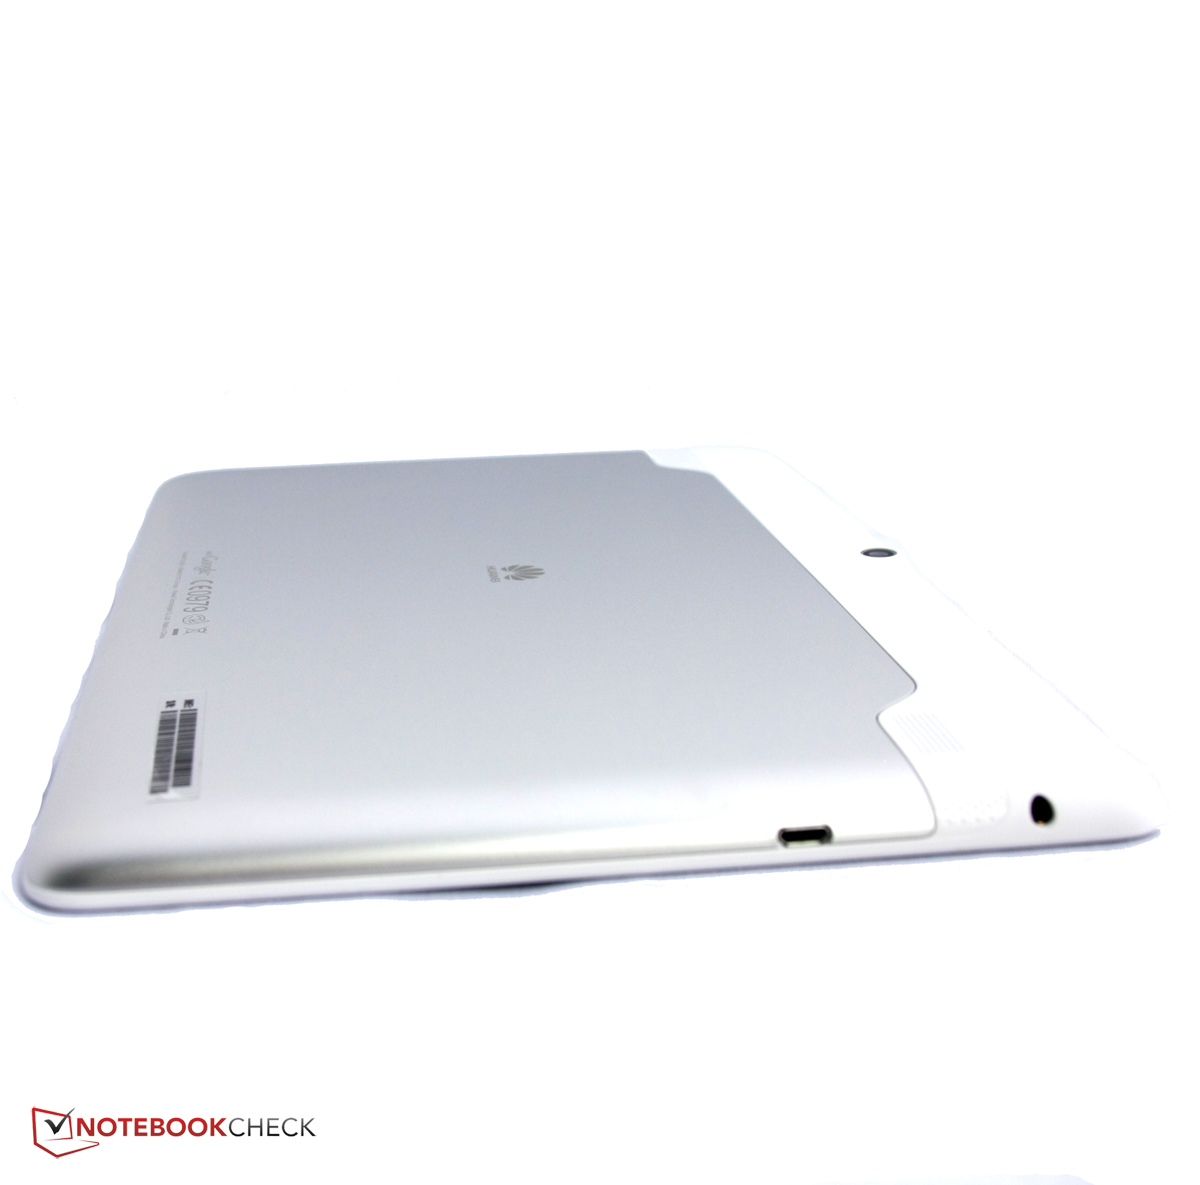 veerboot Niet ingewikkeld Samengroeiing Review Huawei MediaPad 10 Link Tablet - NotebookCheck.net Reviews